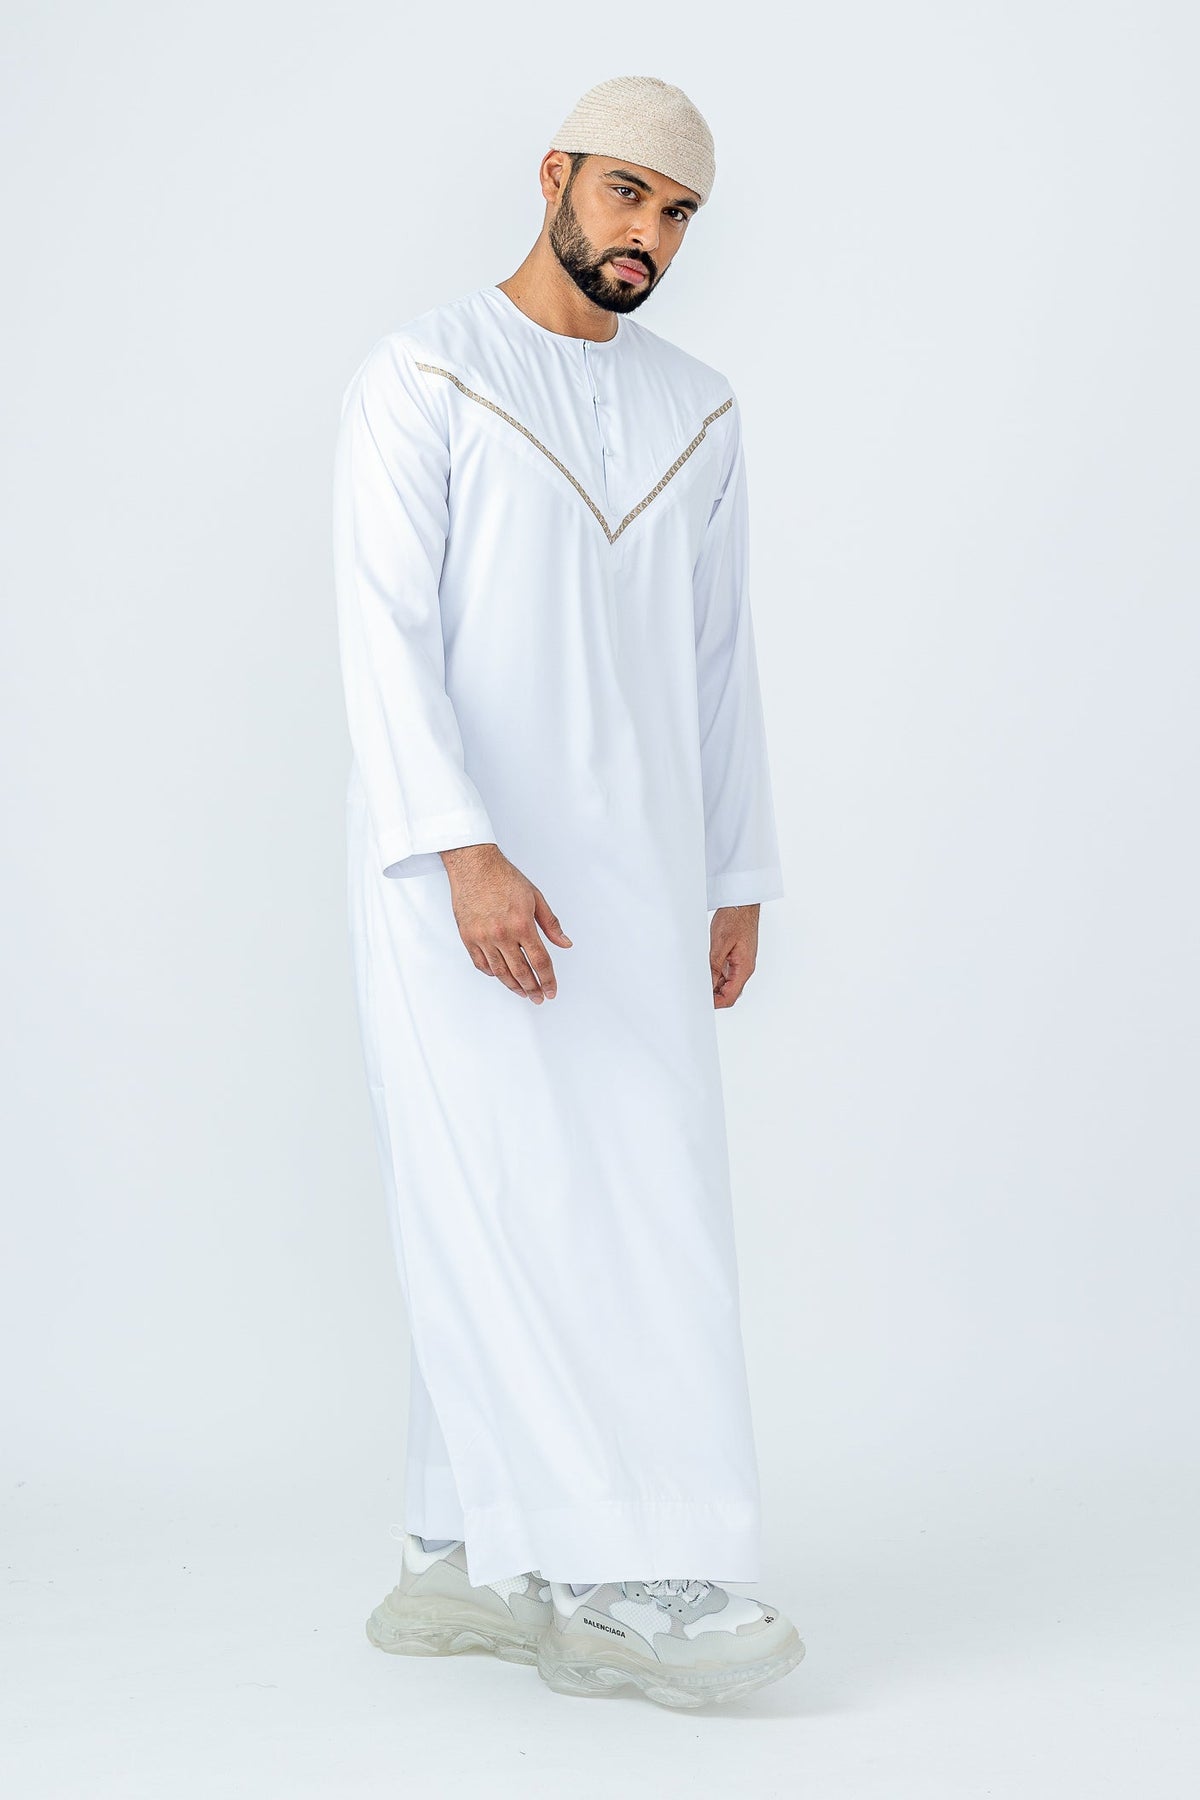 White|Gold Omani Thobe